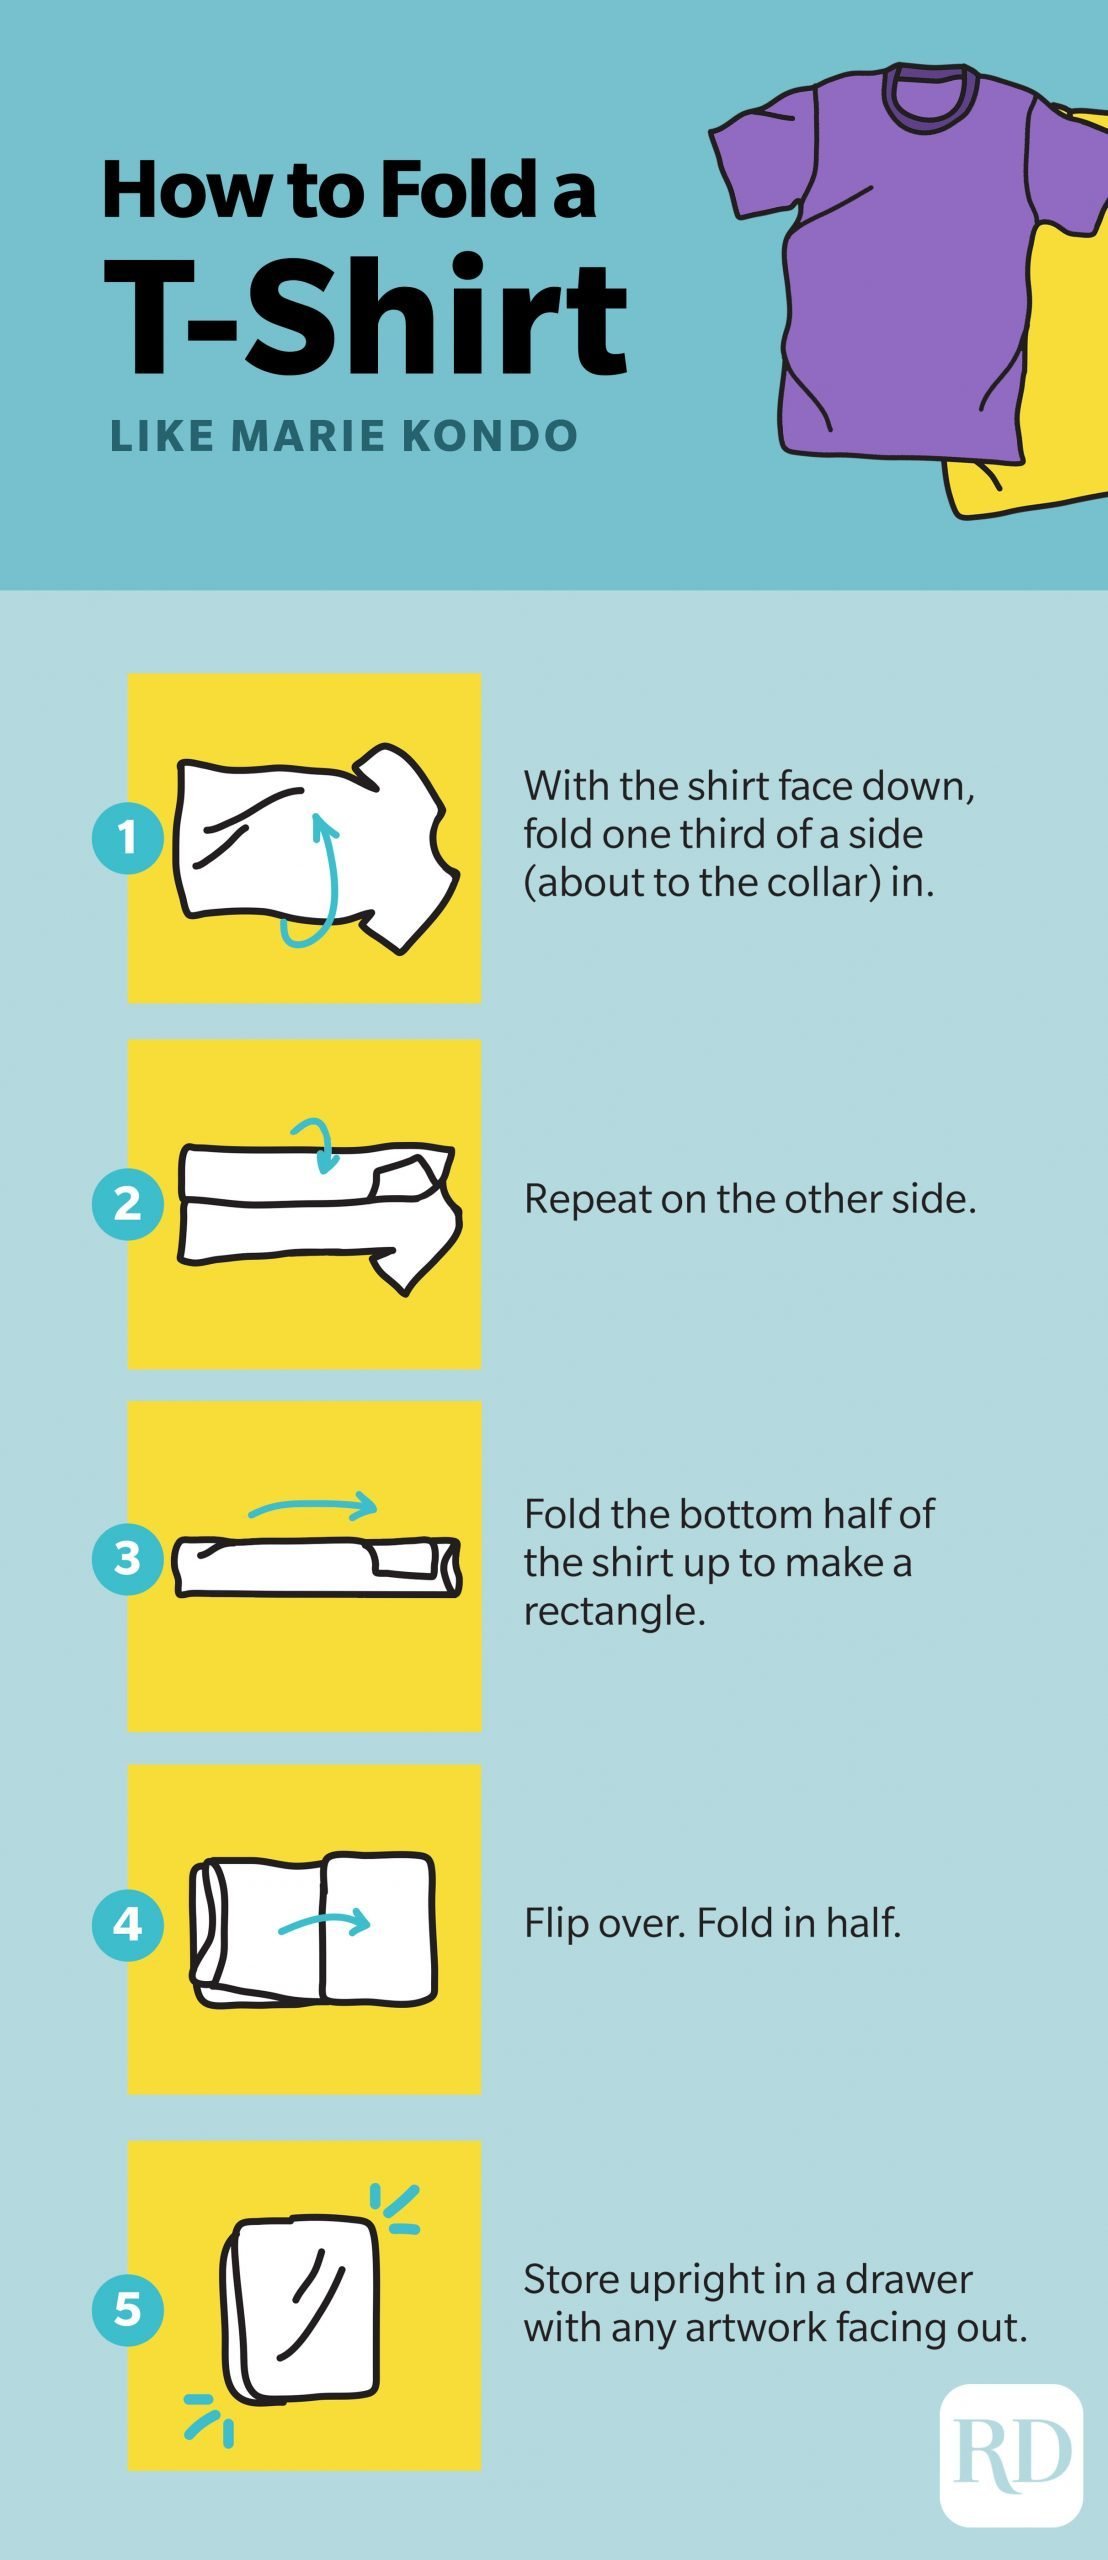 5 Best Ways to Fold a Shirt - How to Fold a Shirt Like Marie Kondo